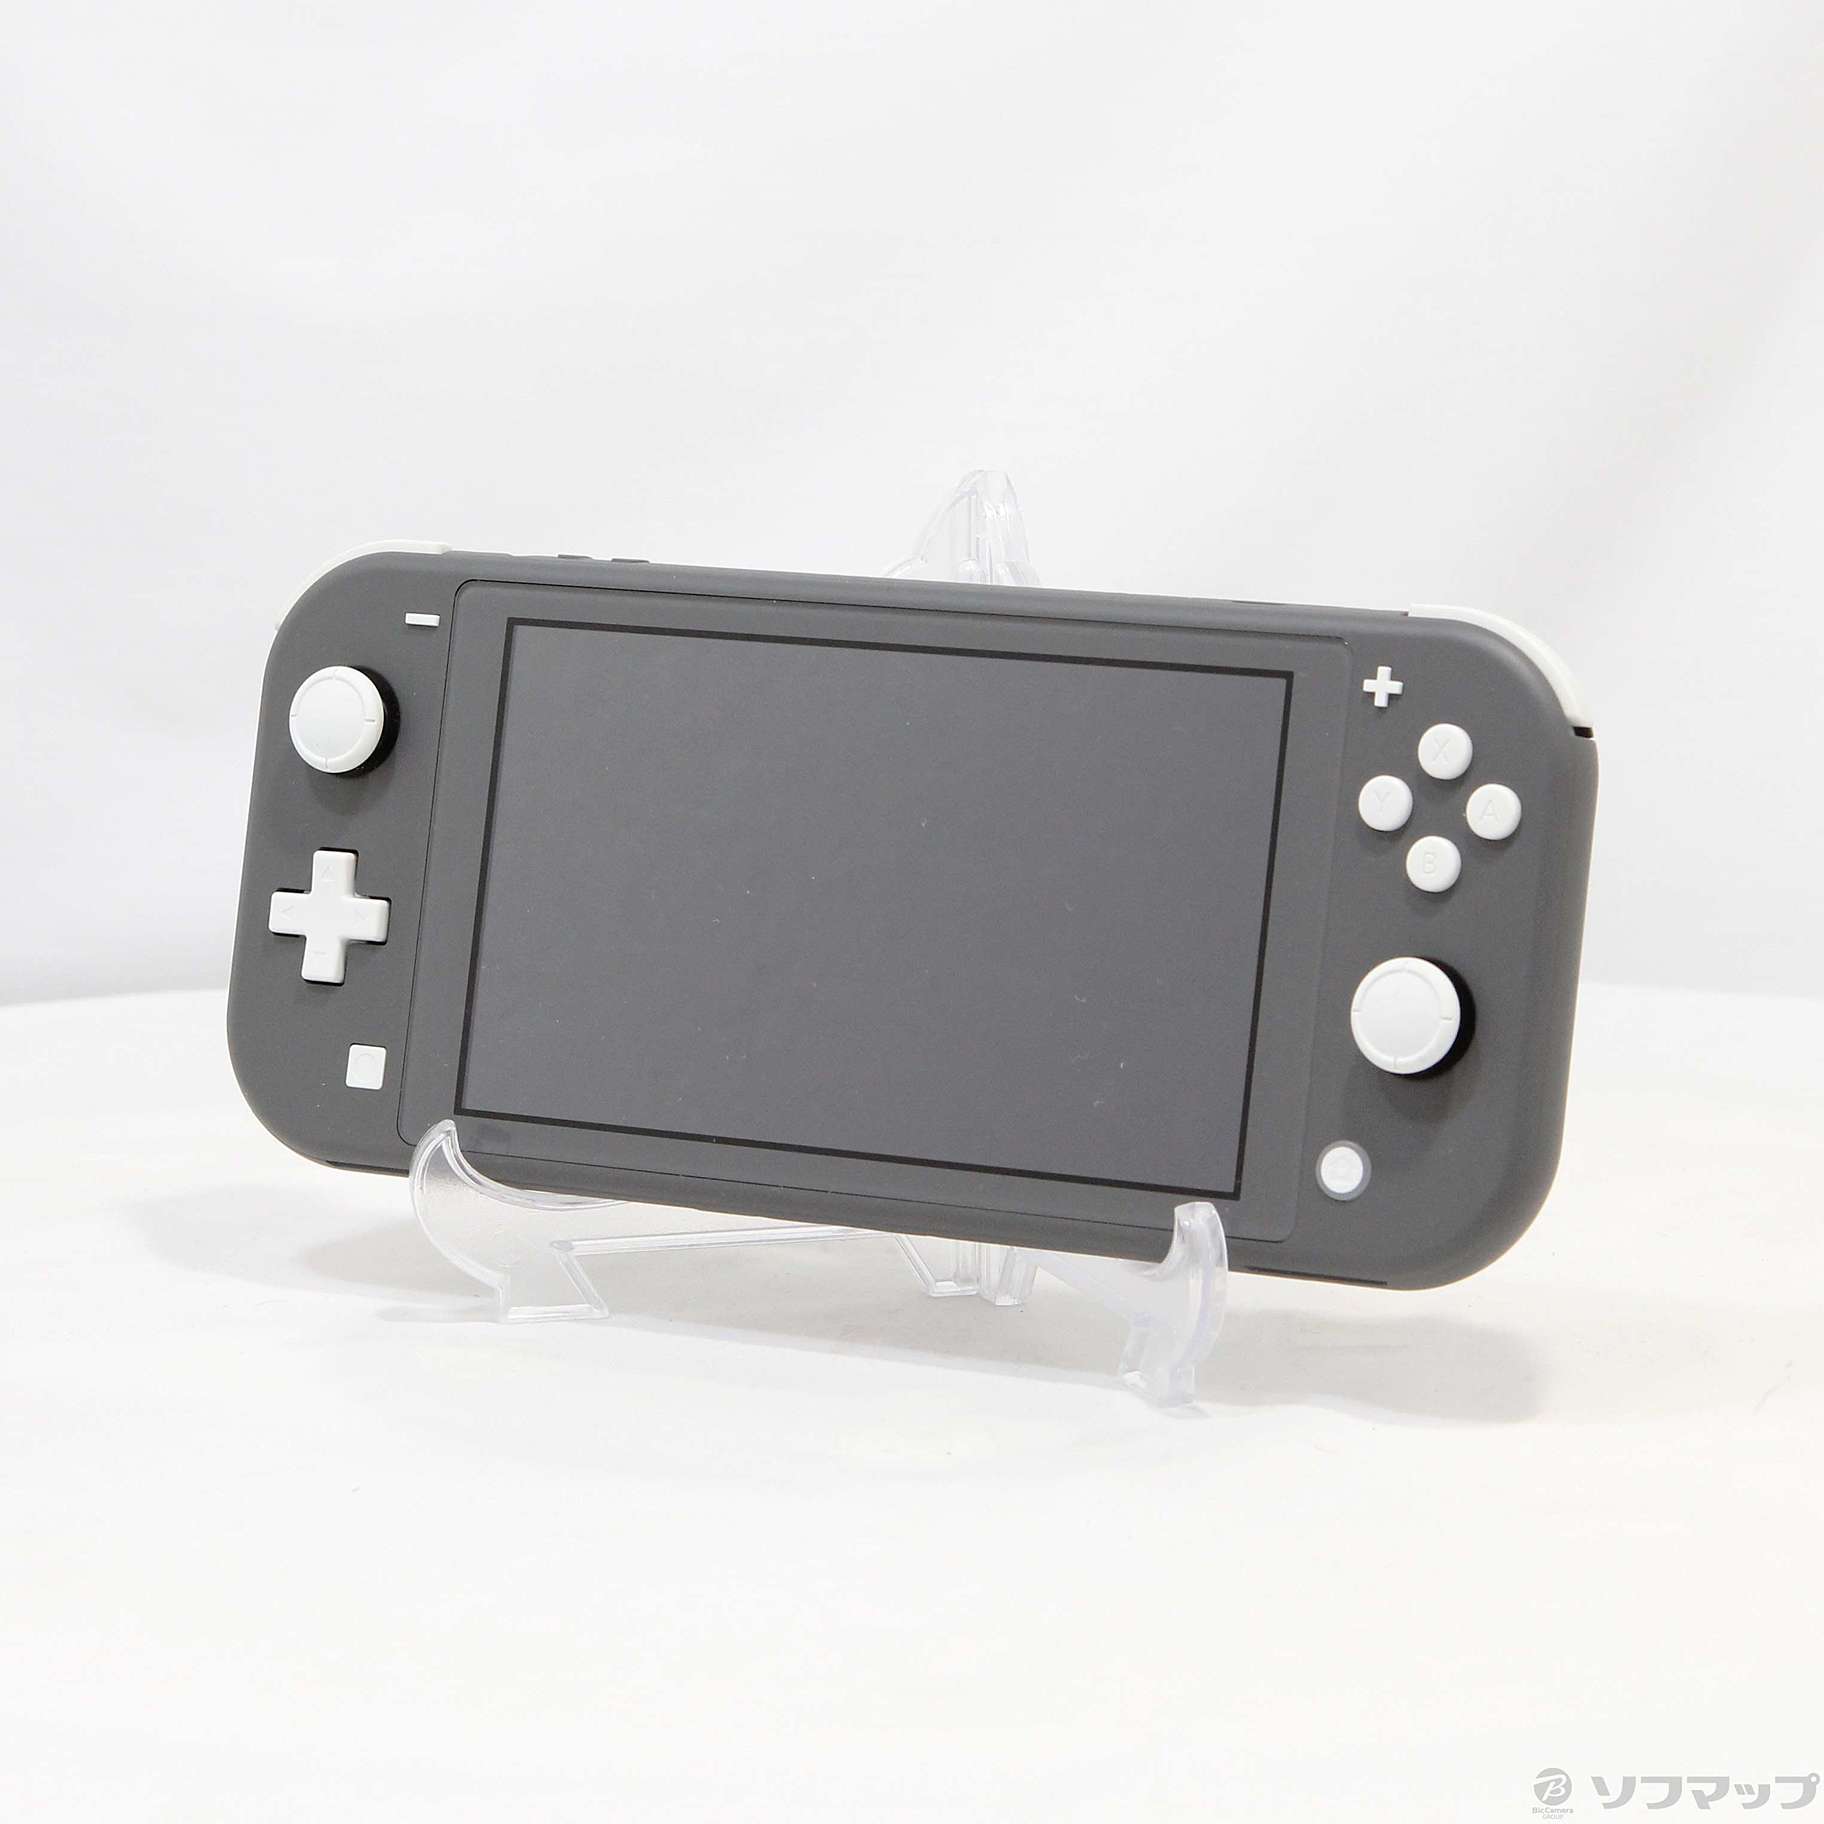 中古】Nintendo Switch Lite グレー ◇01/27(金)値下げ 